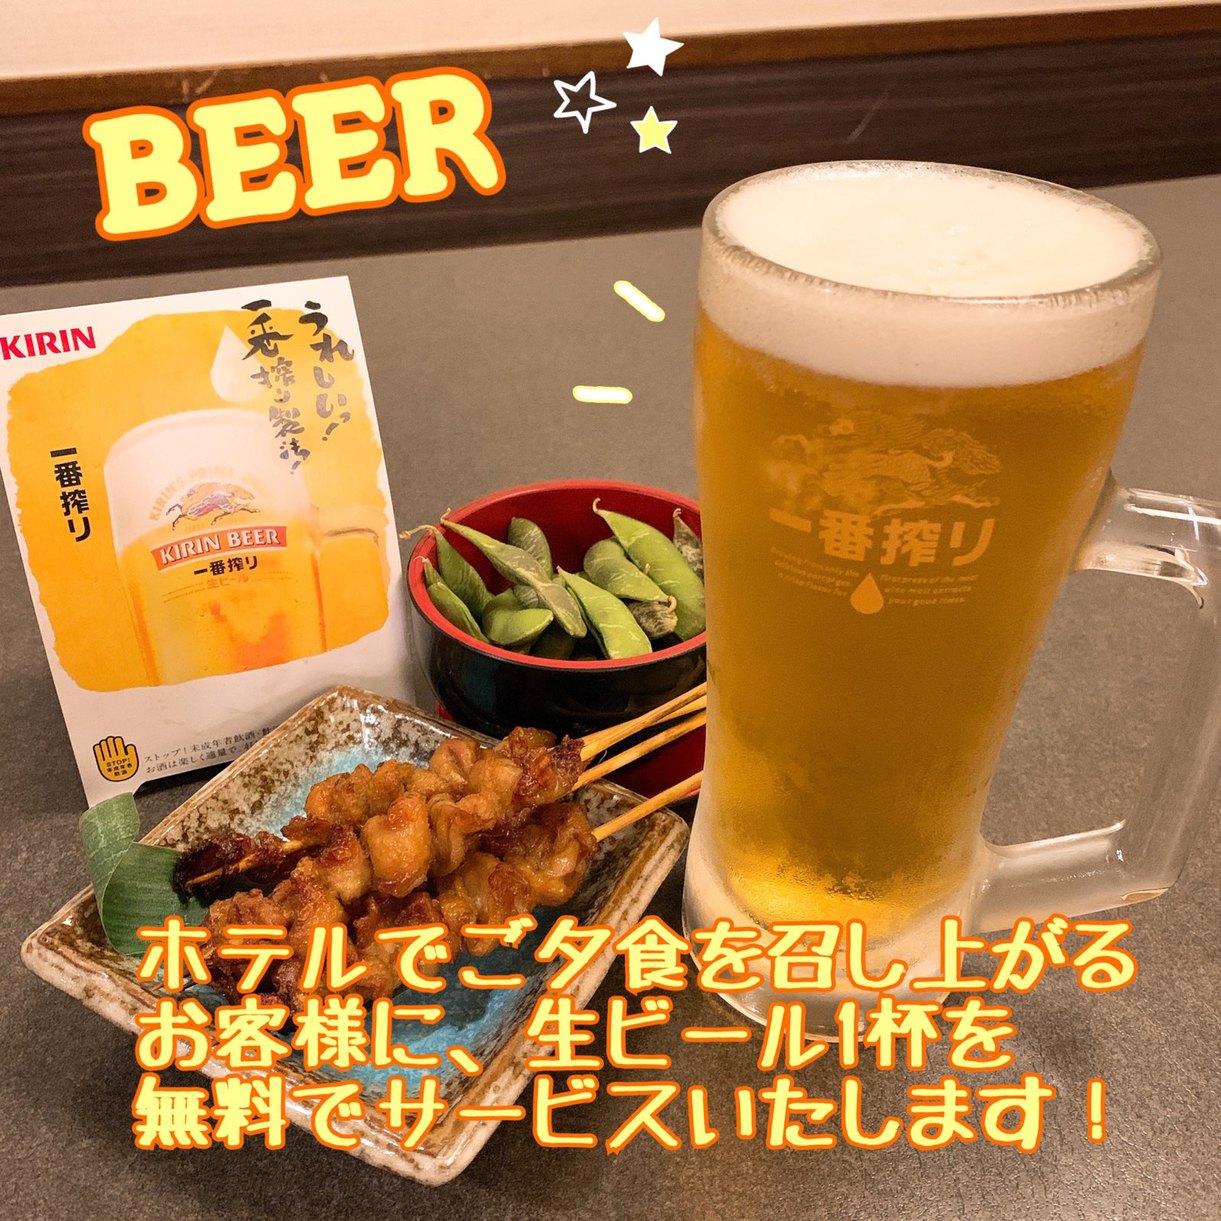 セミダブルカップルプラン☆夕食レストランで使える生ビール1杯無料券付☆